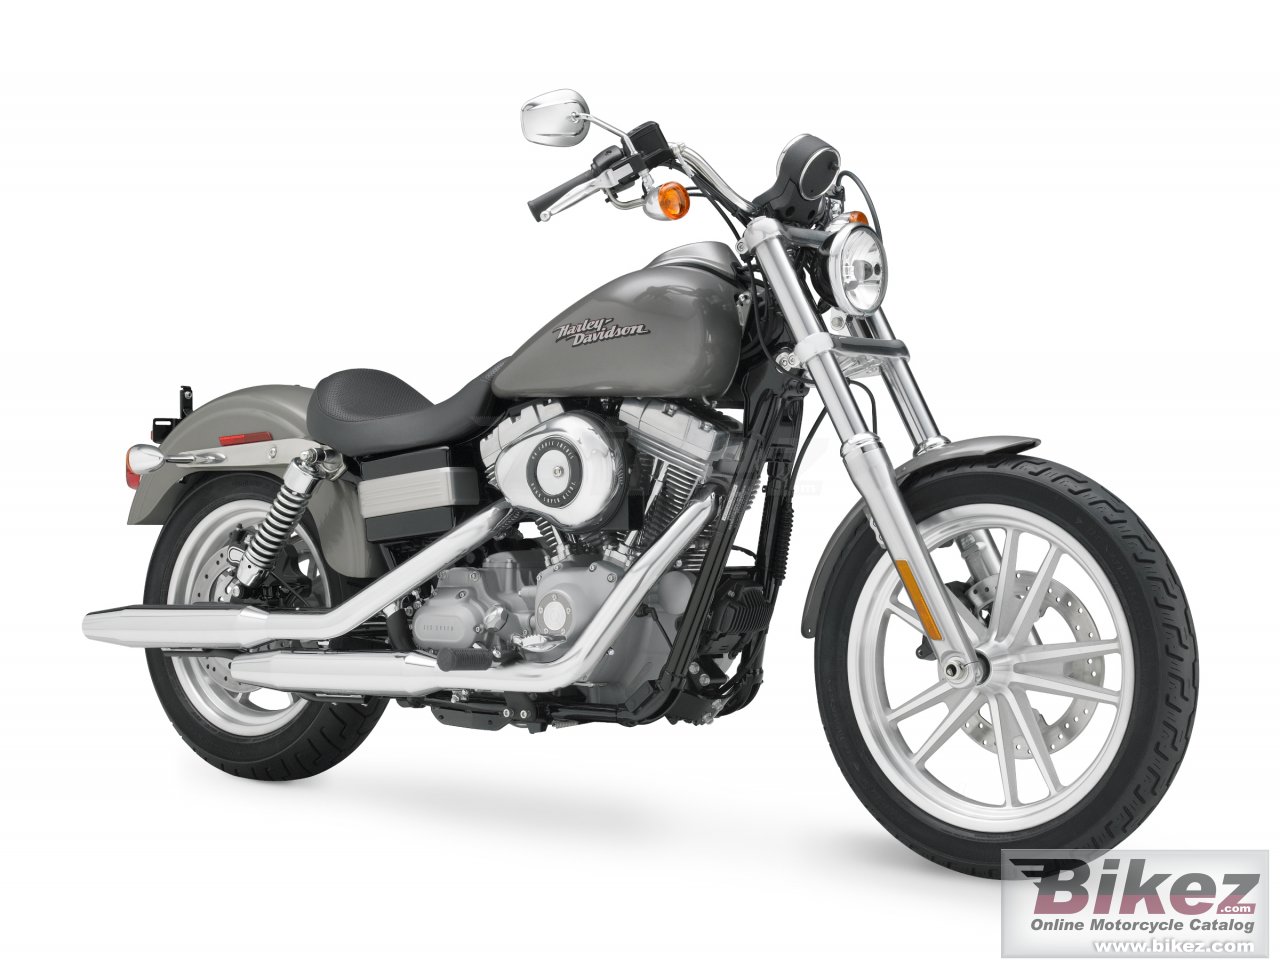 Harley-Davidson FXD Dyna Super Glide